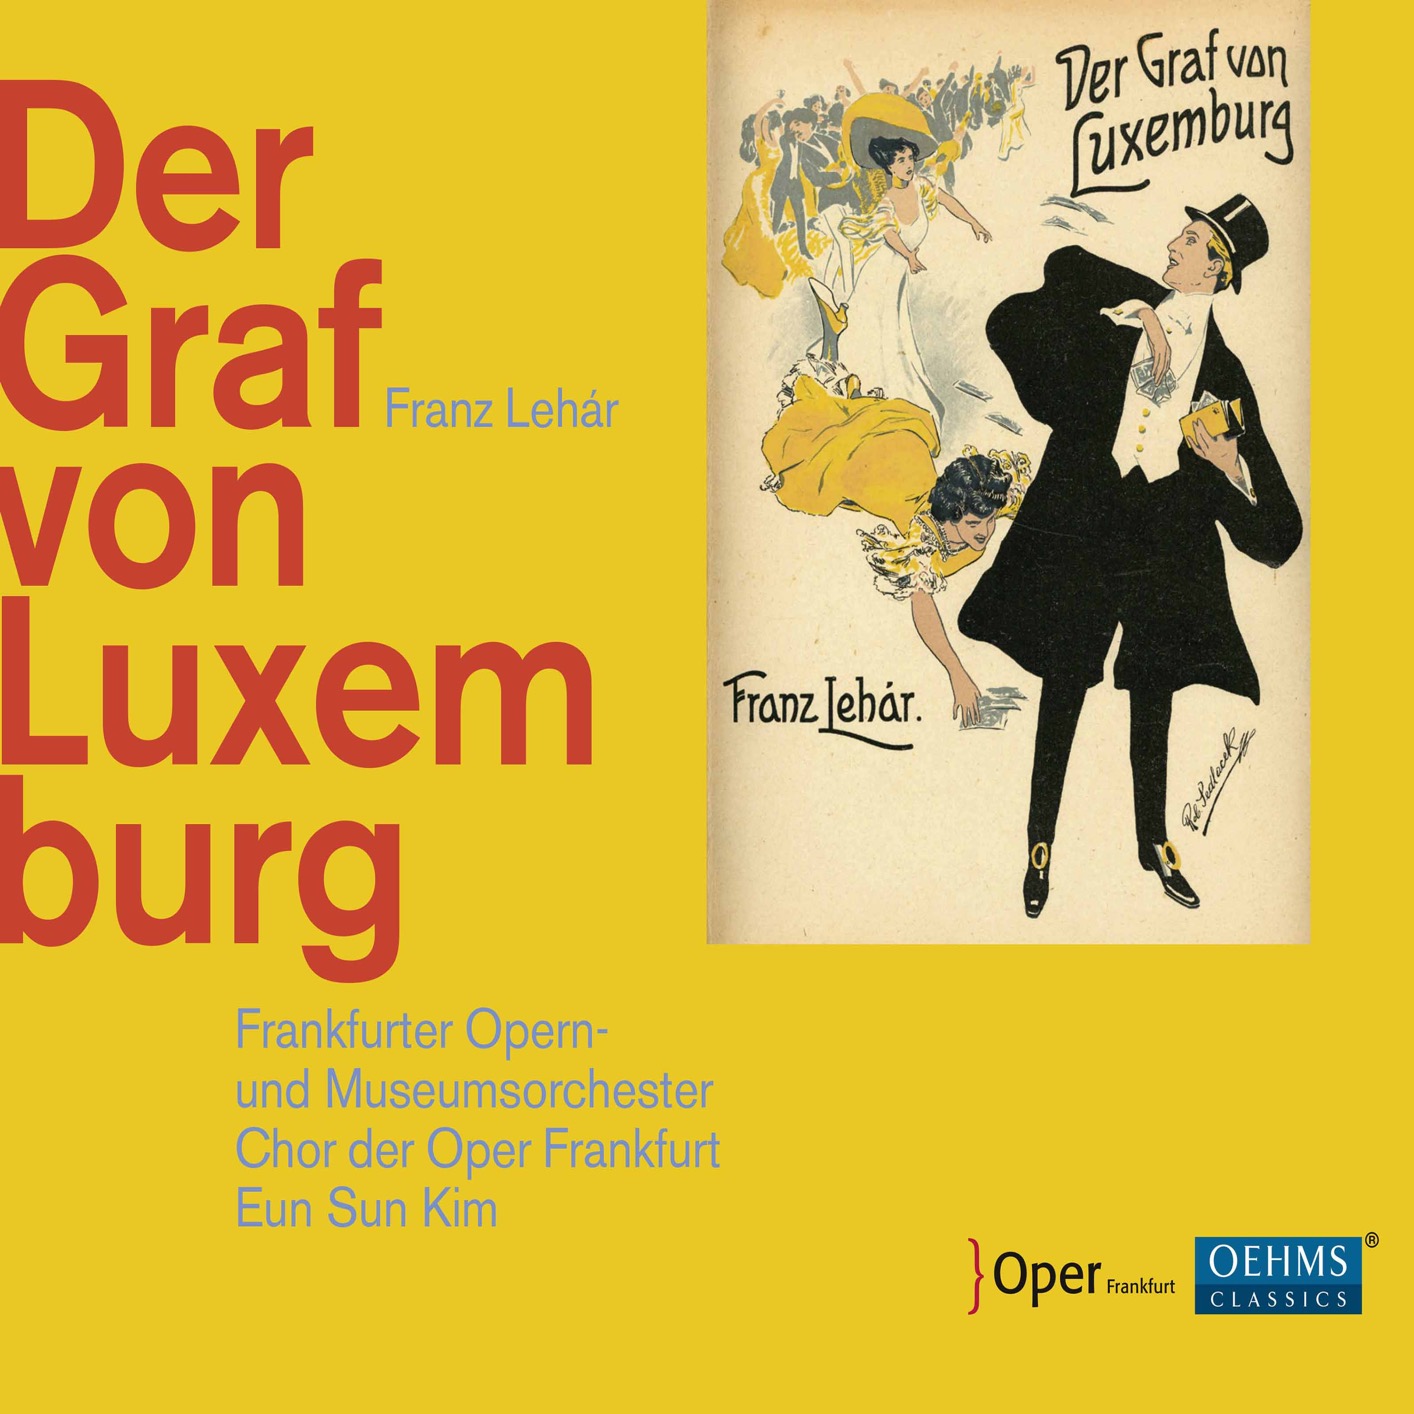 Frankfurter Opern- und Museumsorchester - Lehar: Der Graf von Luxemburg (Live) (2017) [FLAC 24bit/96kHz]